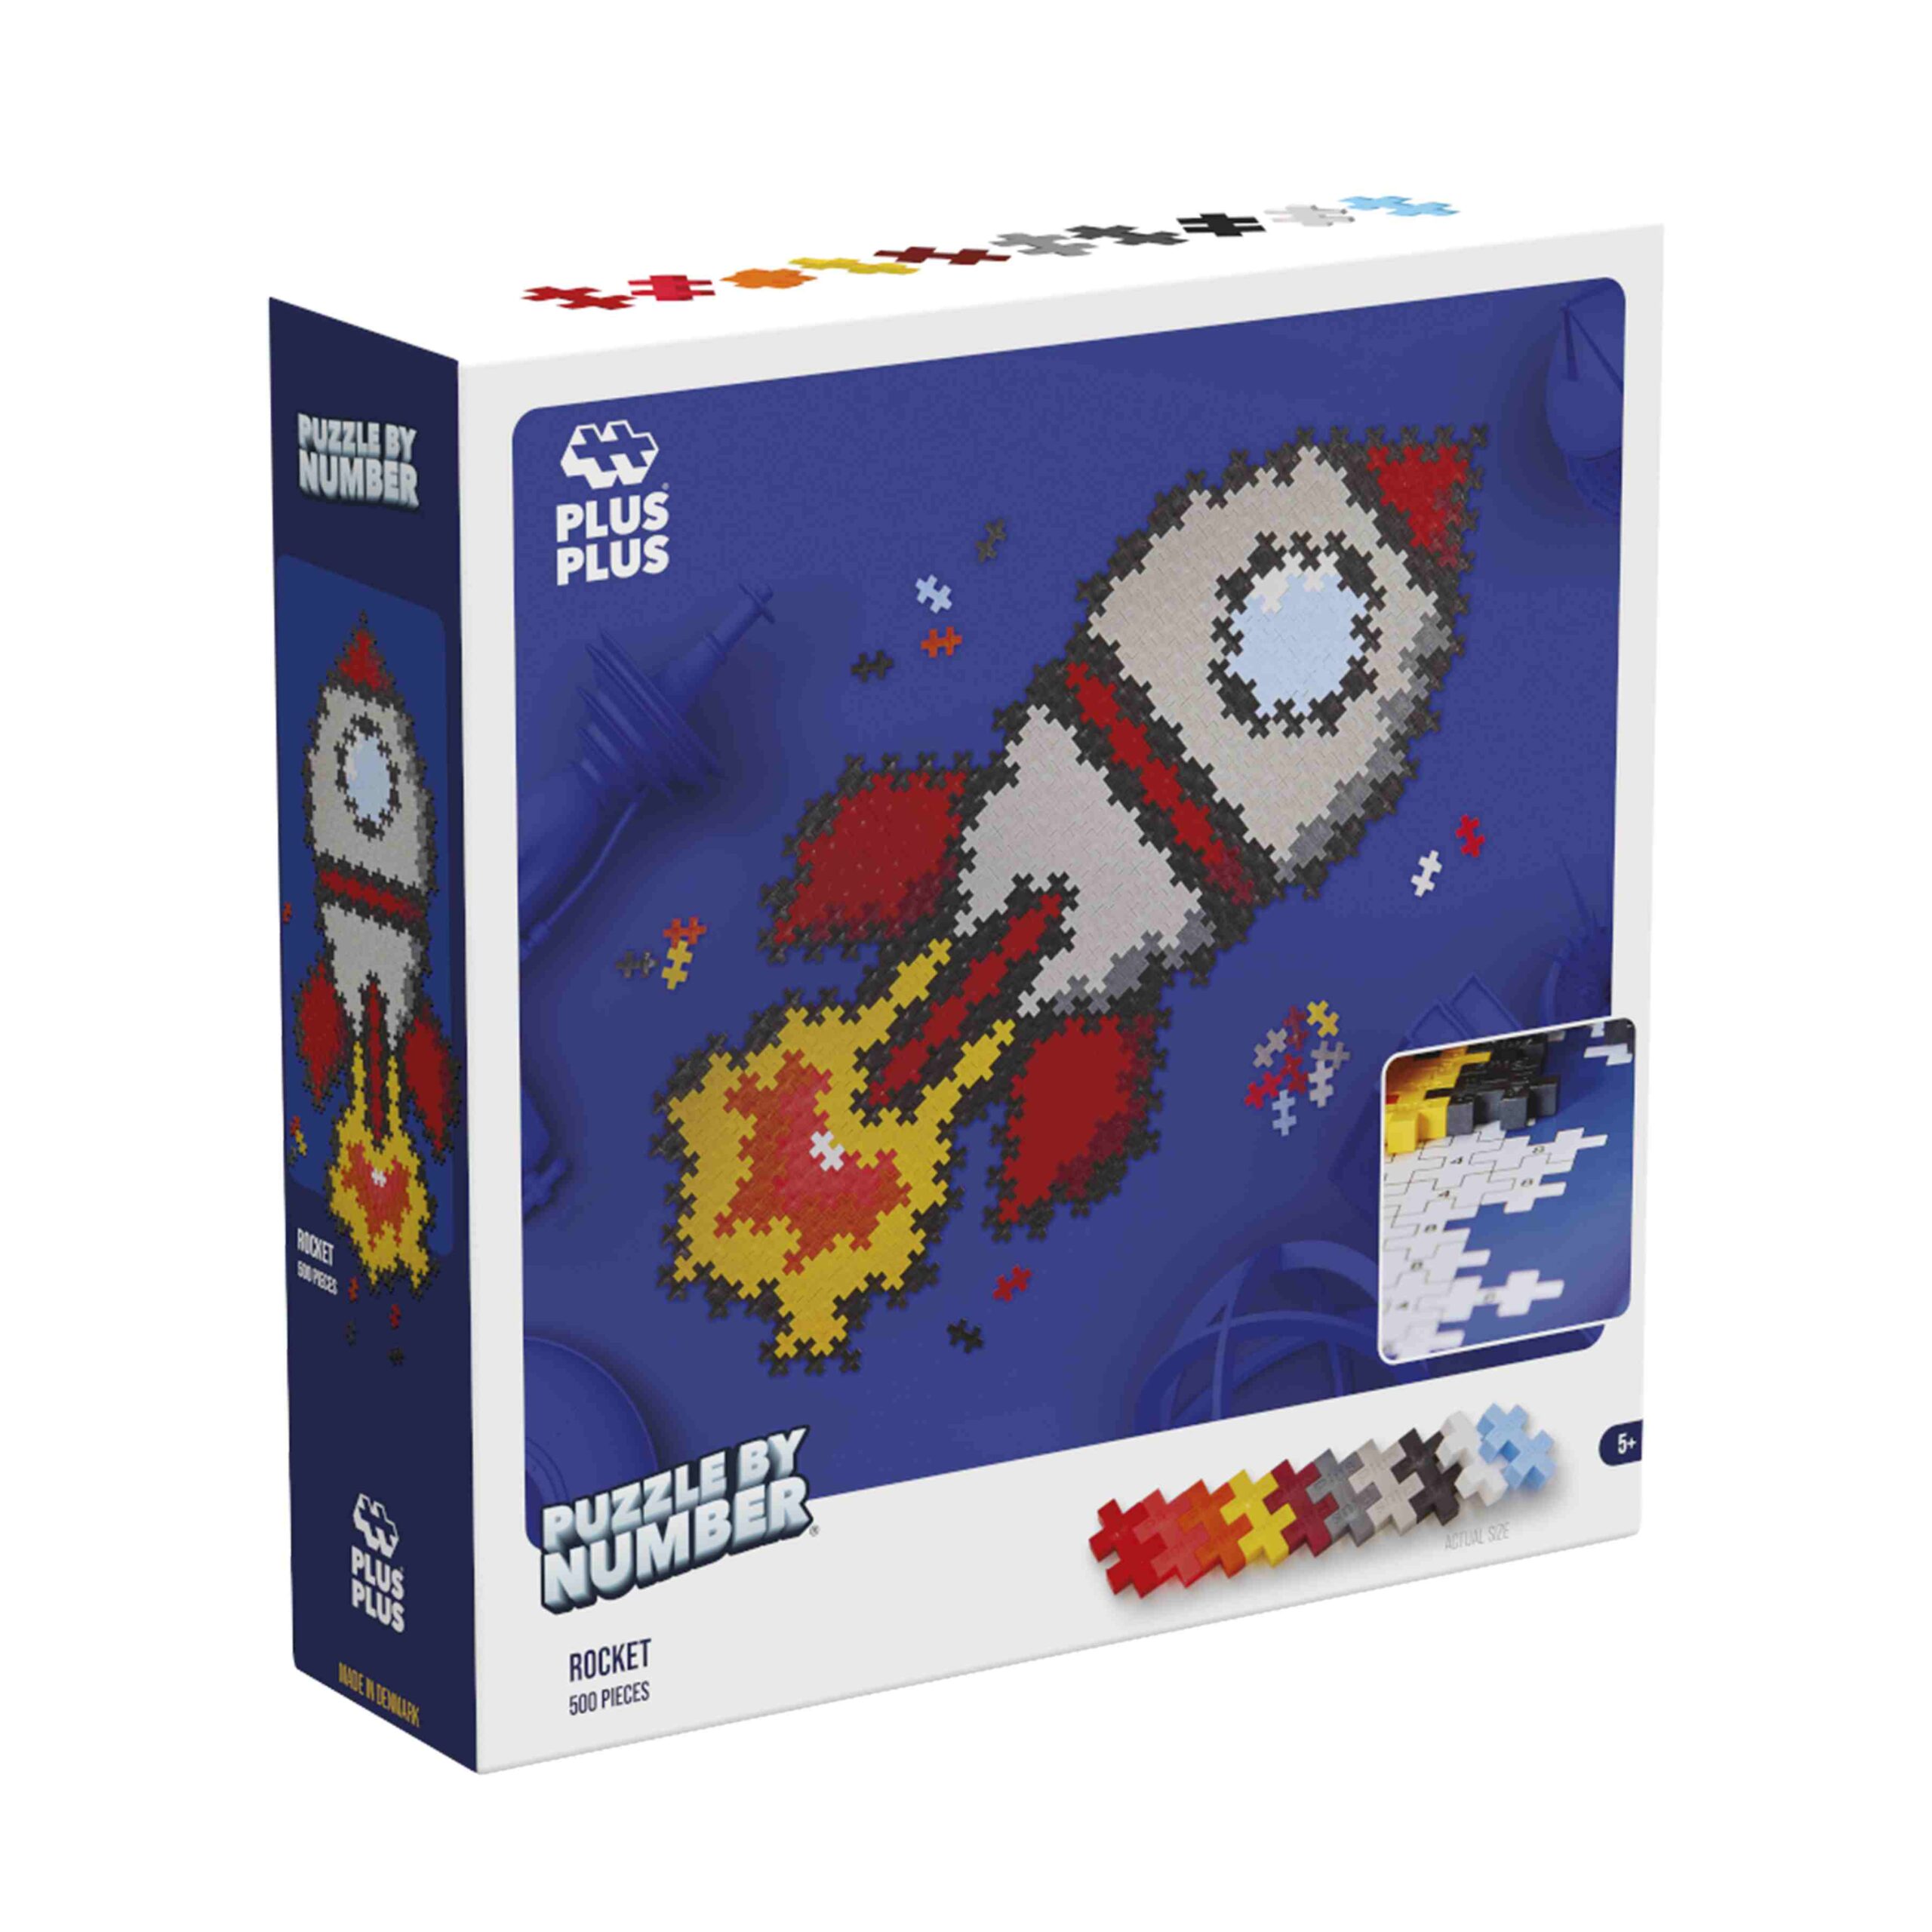 Plus-plus puzzle by number rocket 500pcs - ZIG ZAG